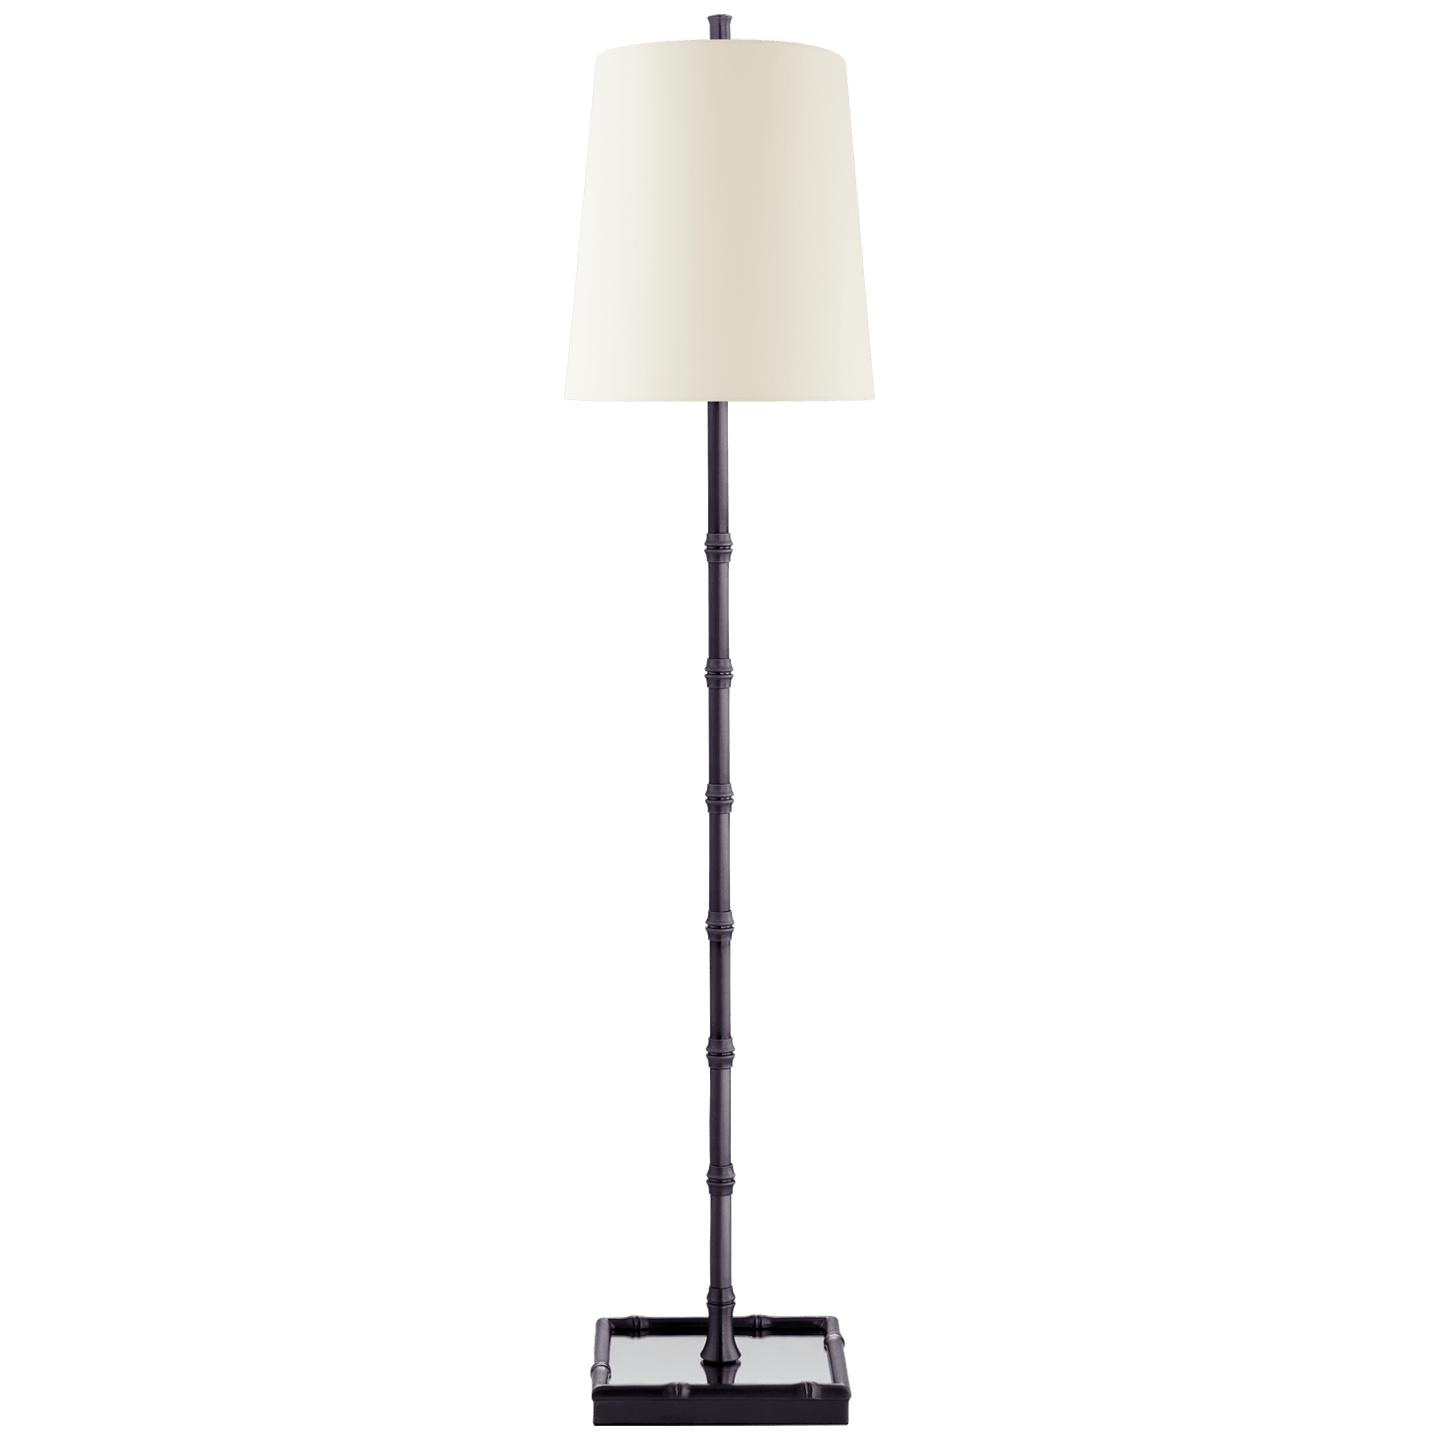 Купить Настольная лампа Grenol Buffet Lamp в интернет-магазине roooms.ru